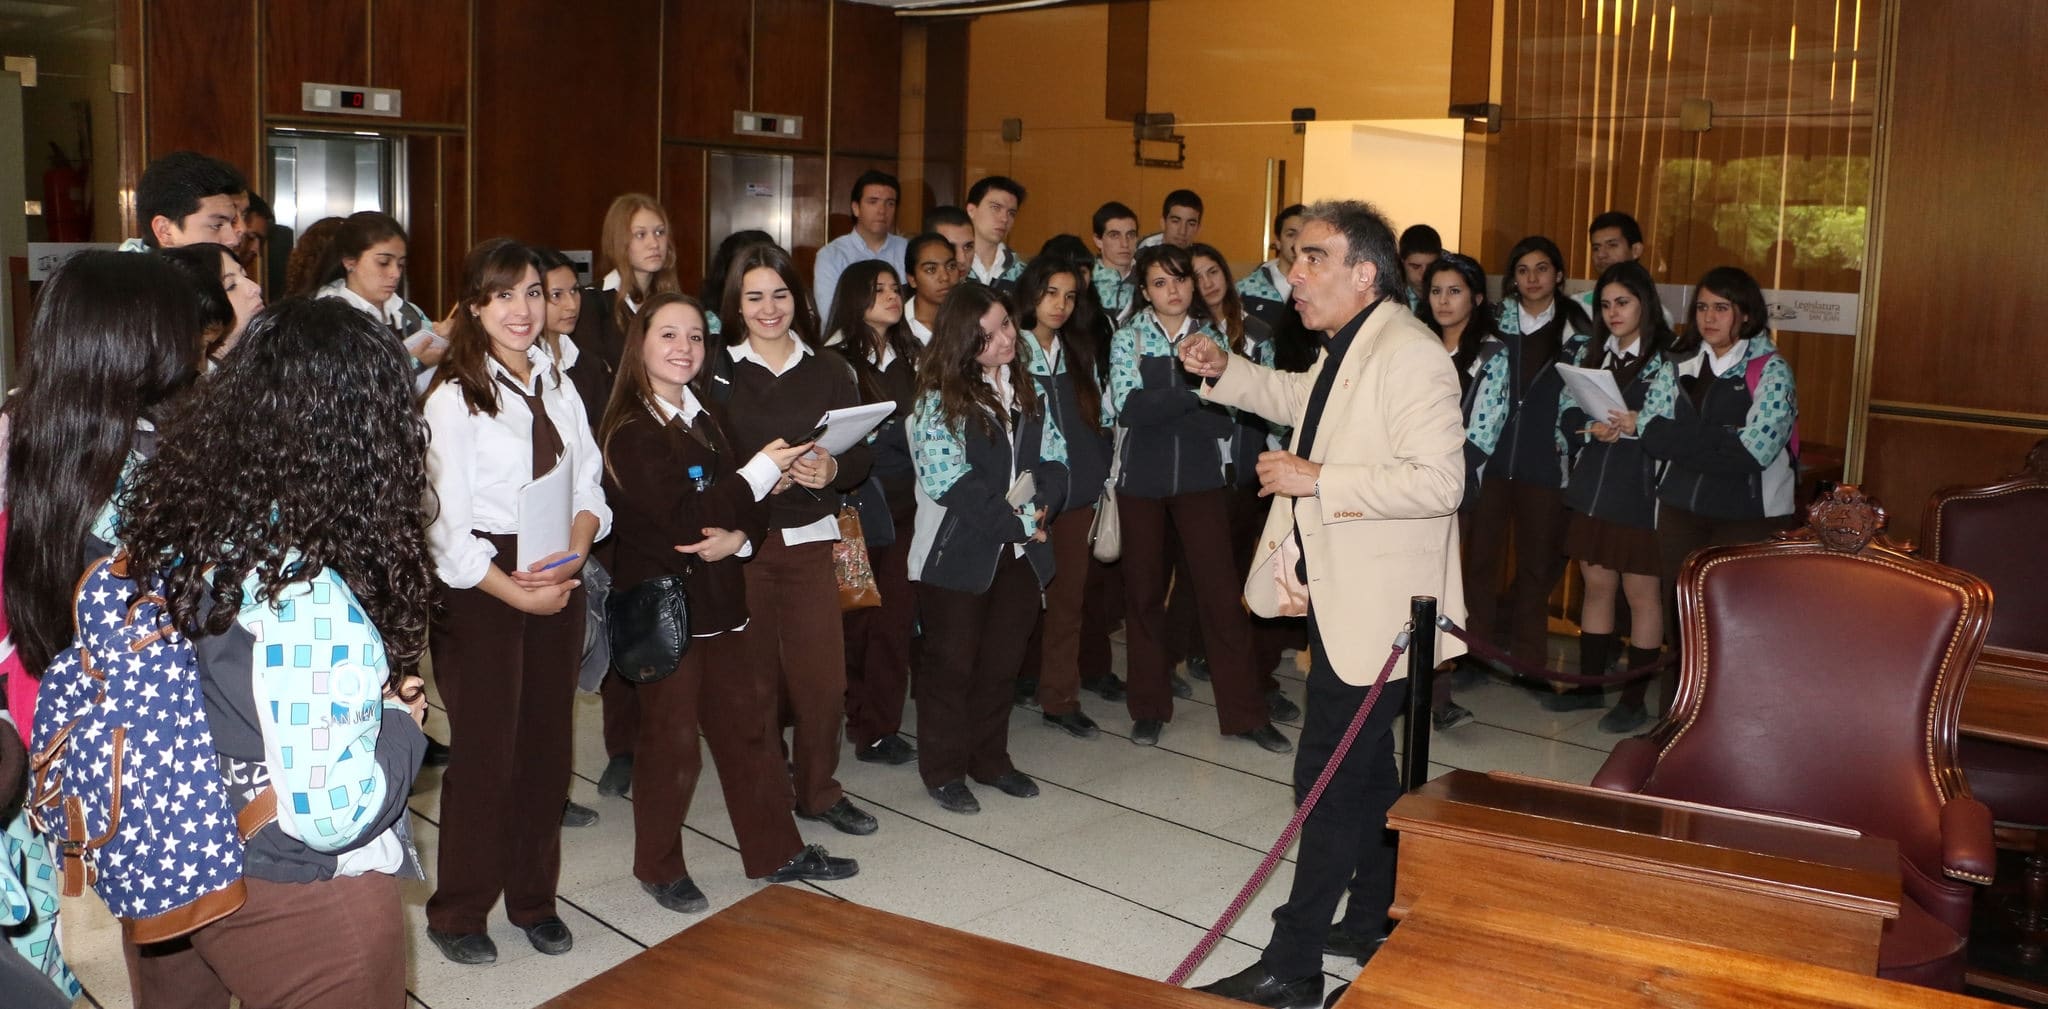 Alumnos y docentes del colegio "Santa Bárbara", presentes en la Cámara de Diputados. 